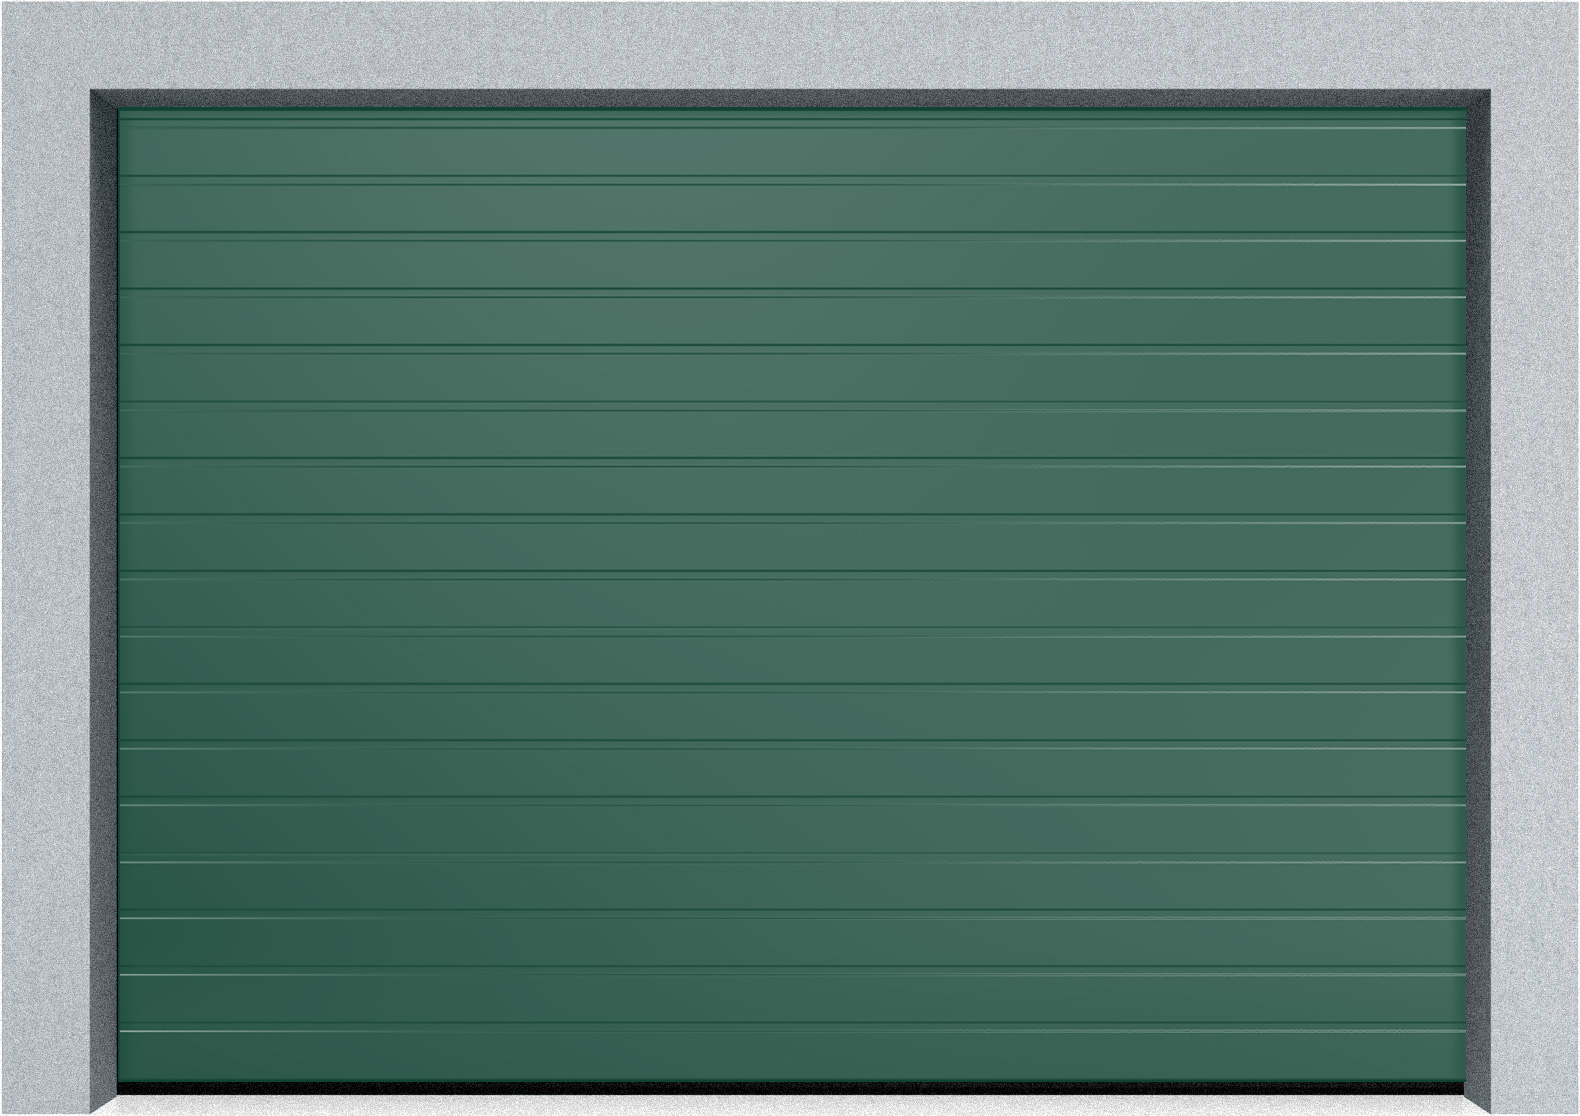  Автоматические секционные промышленные ворота DoorHan ISD ThermalPro 2300x3700 S-гофр, M-гофр, Микроволна стандартные цвета, фото 7 